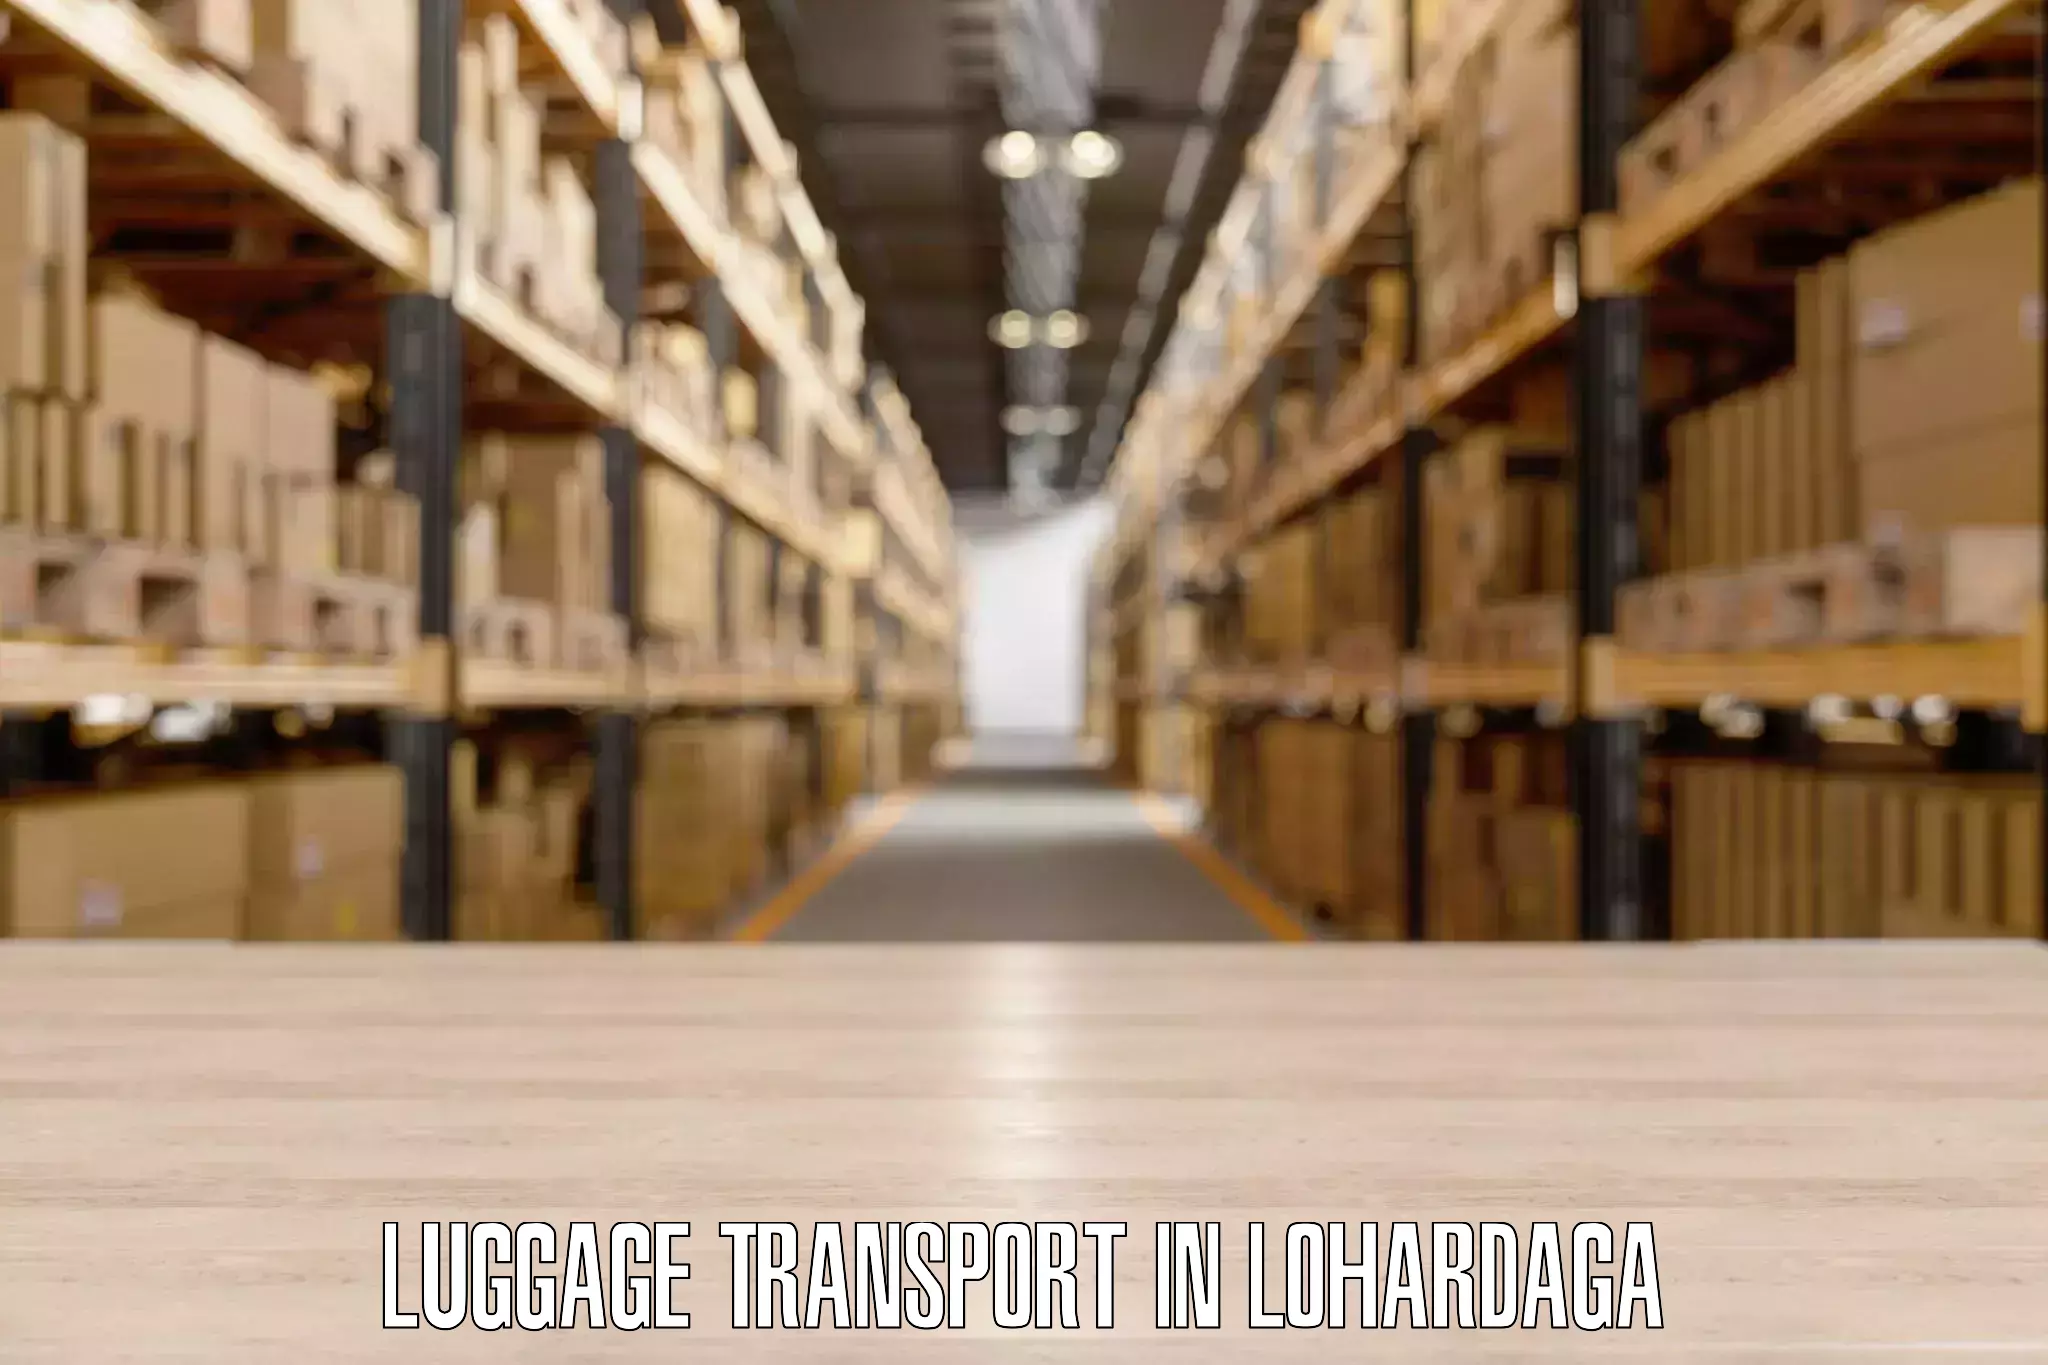 Long distance luggage transport in Lohardaga